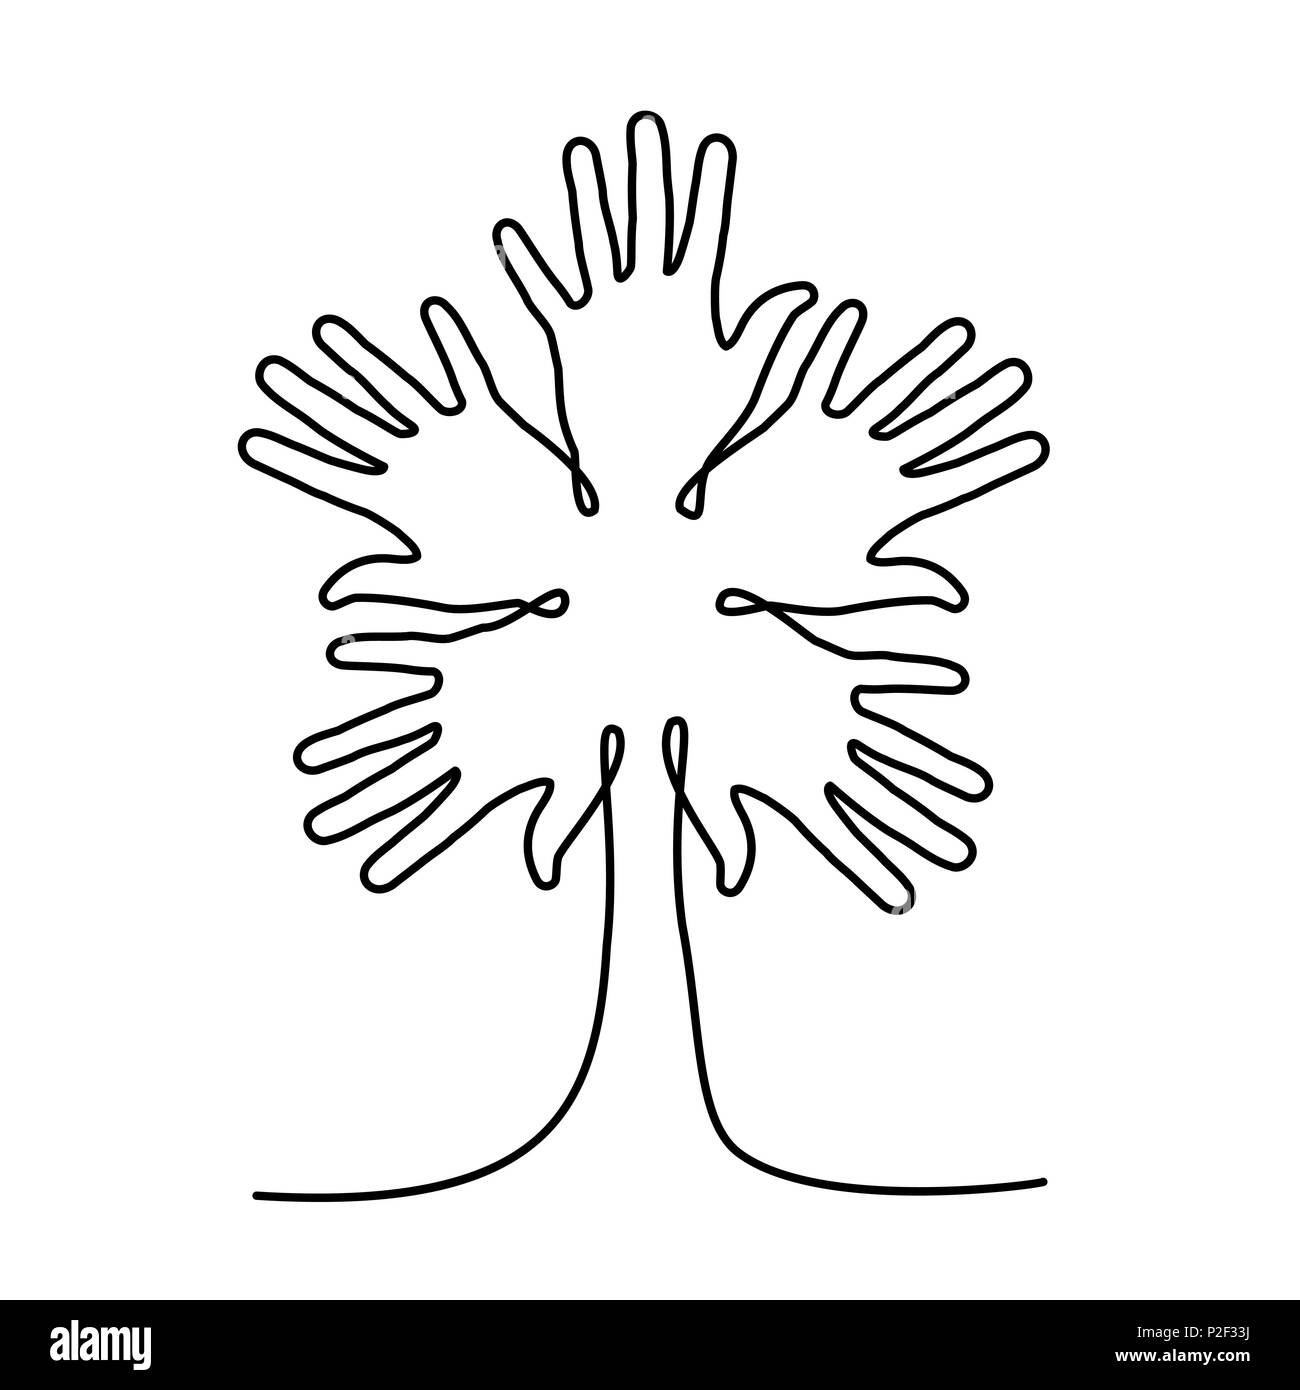 Tree fatta di mani umane in singola linea continua. Concetto idea comunitaria per aiutare, carità progetto o evento sociale. EPS10 vettore. Illustrazione Vettoriale